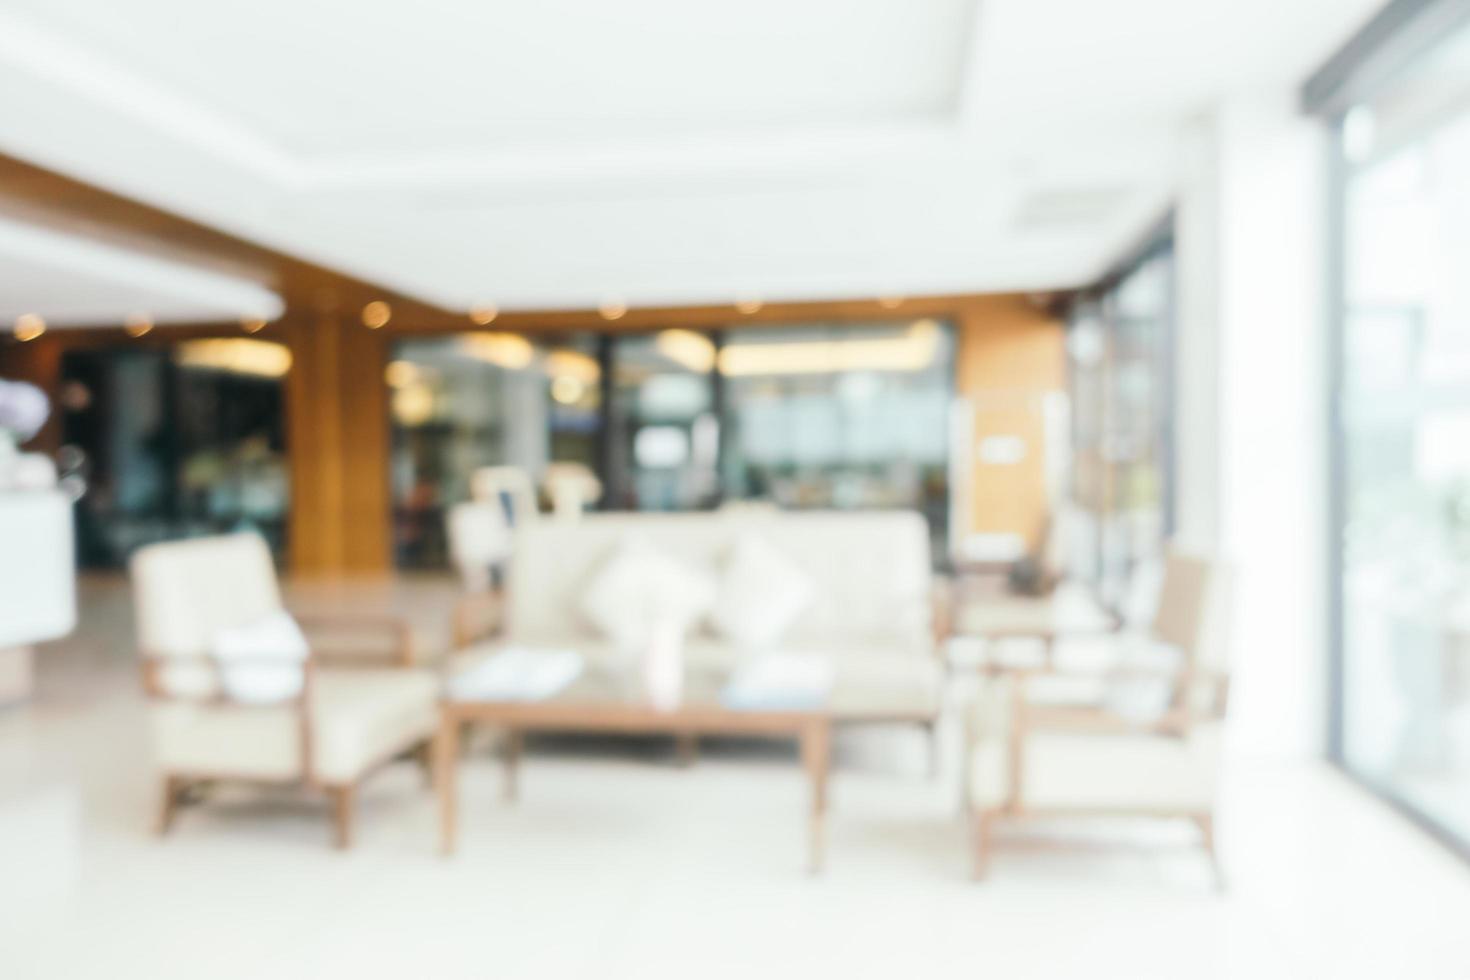 abstrakt oskärpa och defokuserad lobby av hotellinredning foto